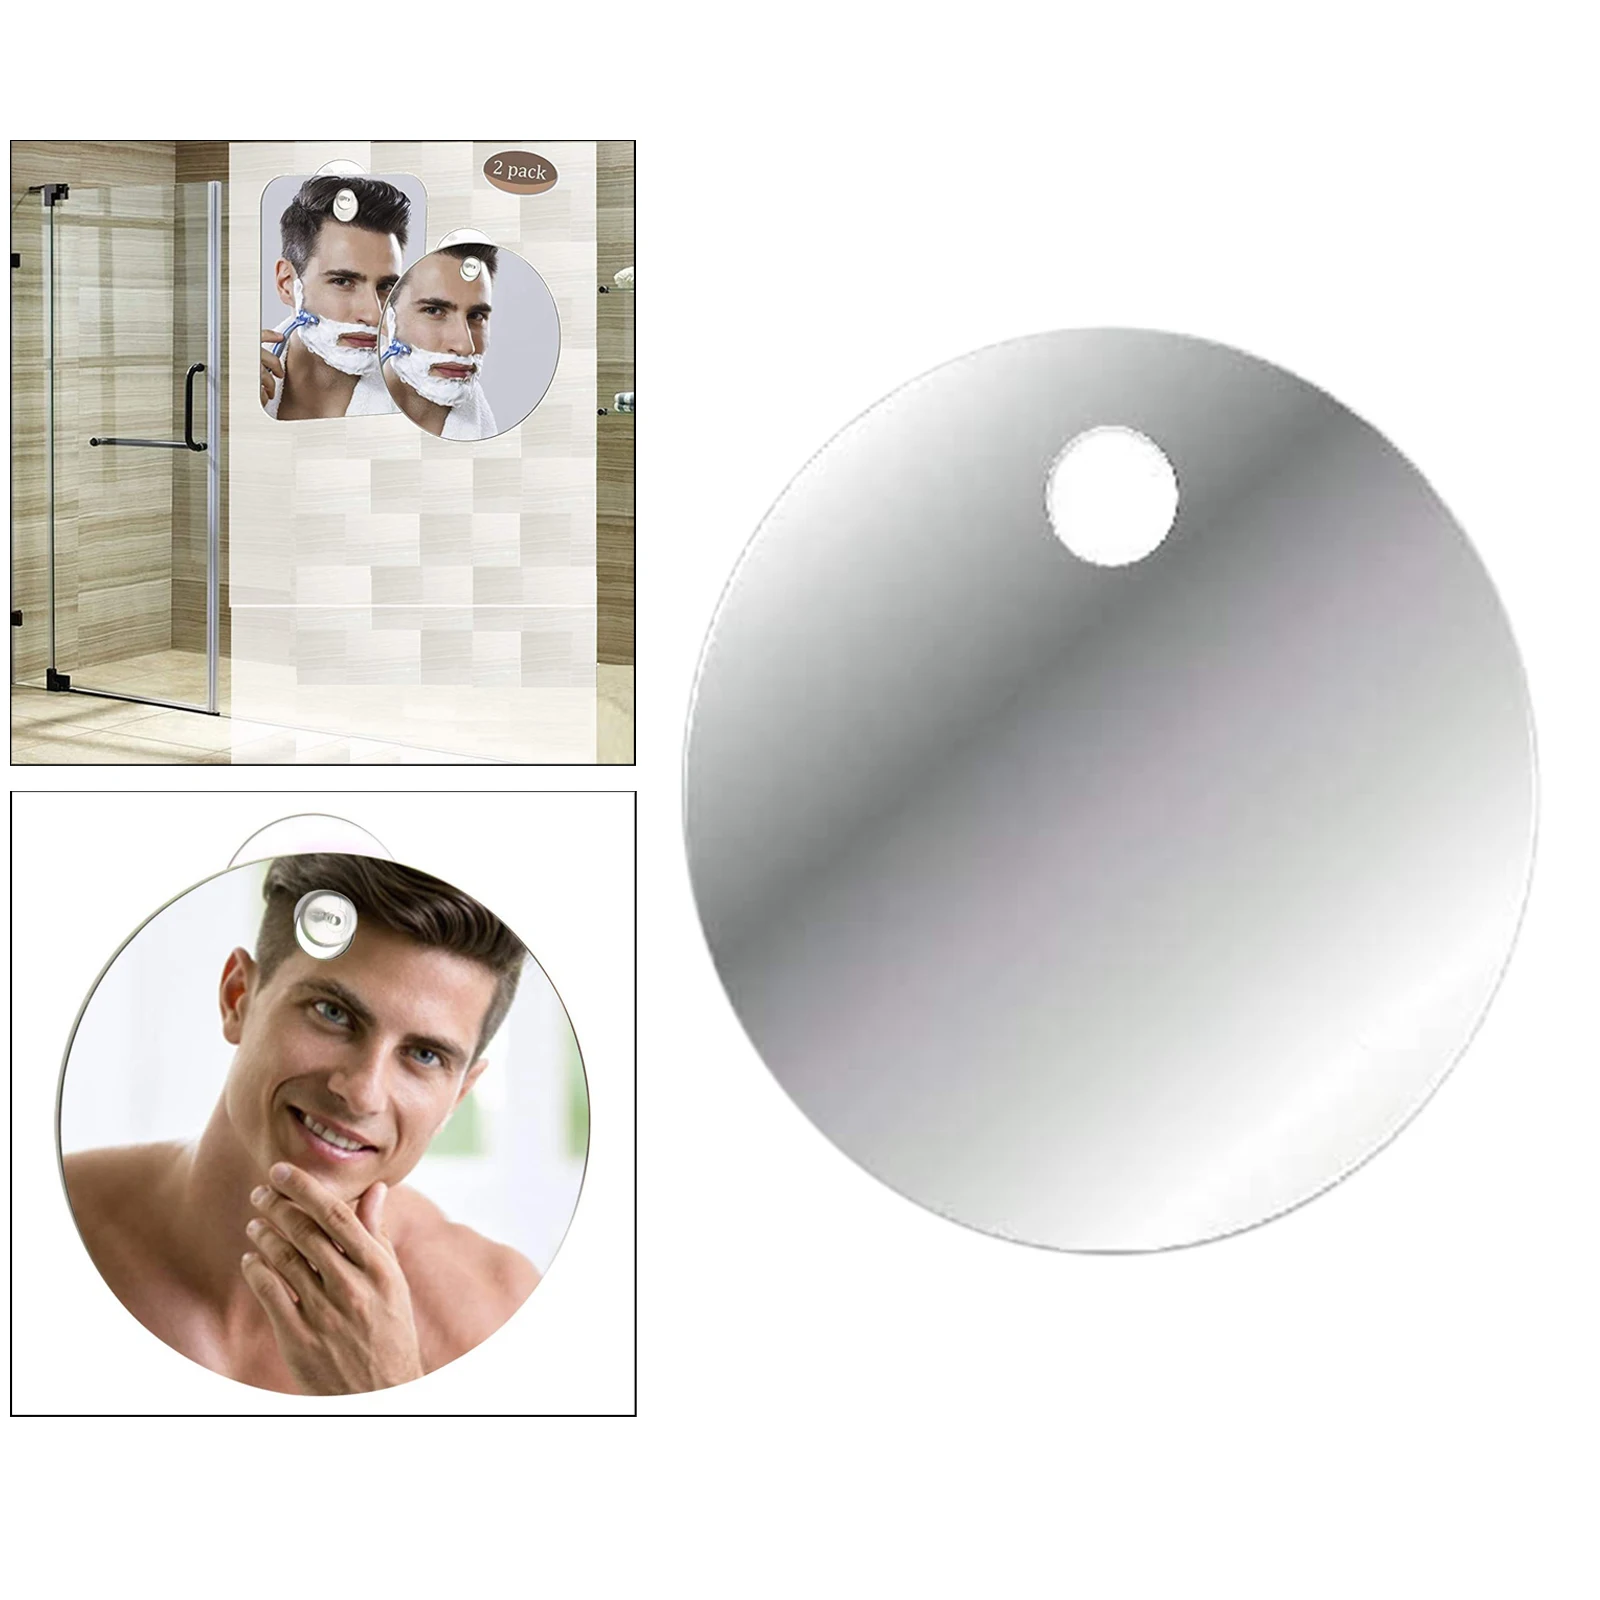 Fogless Shower Mirror for Shaving with Razor Hook, Anti-Fog Bathroom Shaving